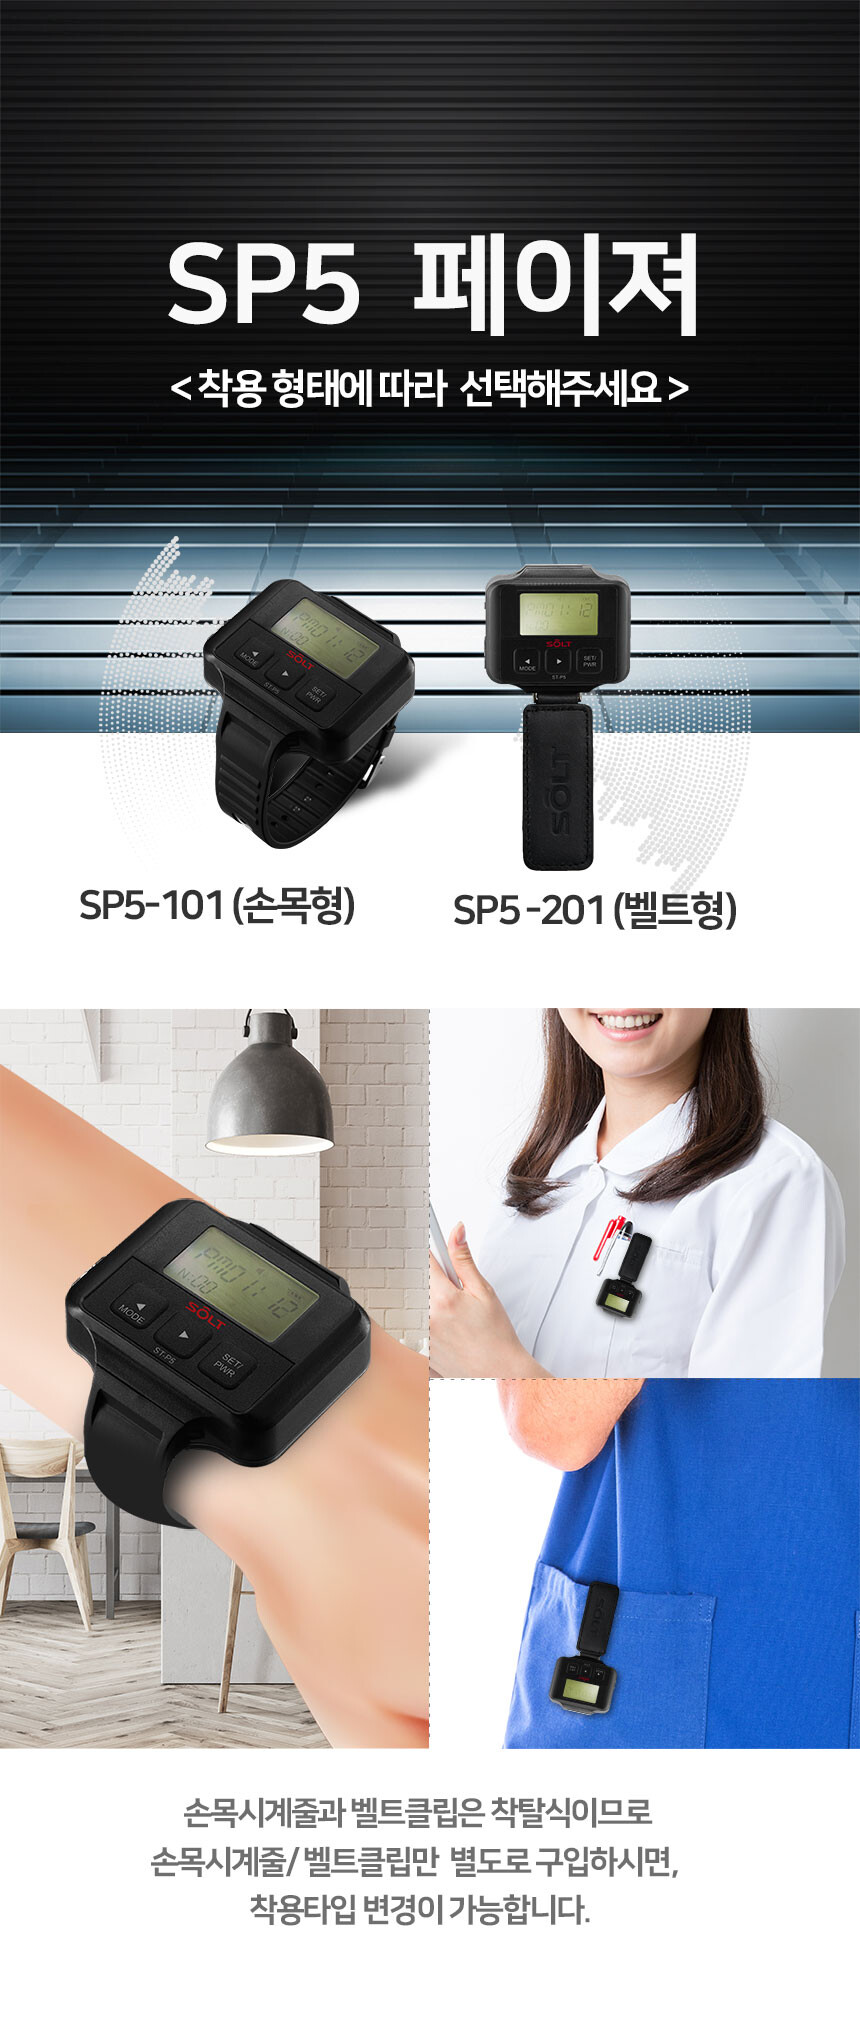 SP5 페이저 소개